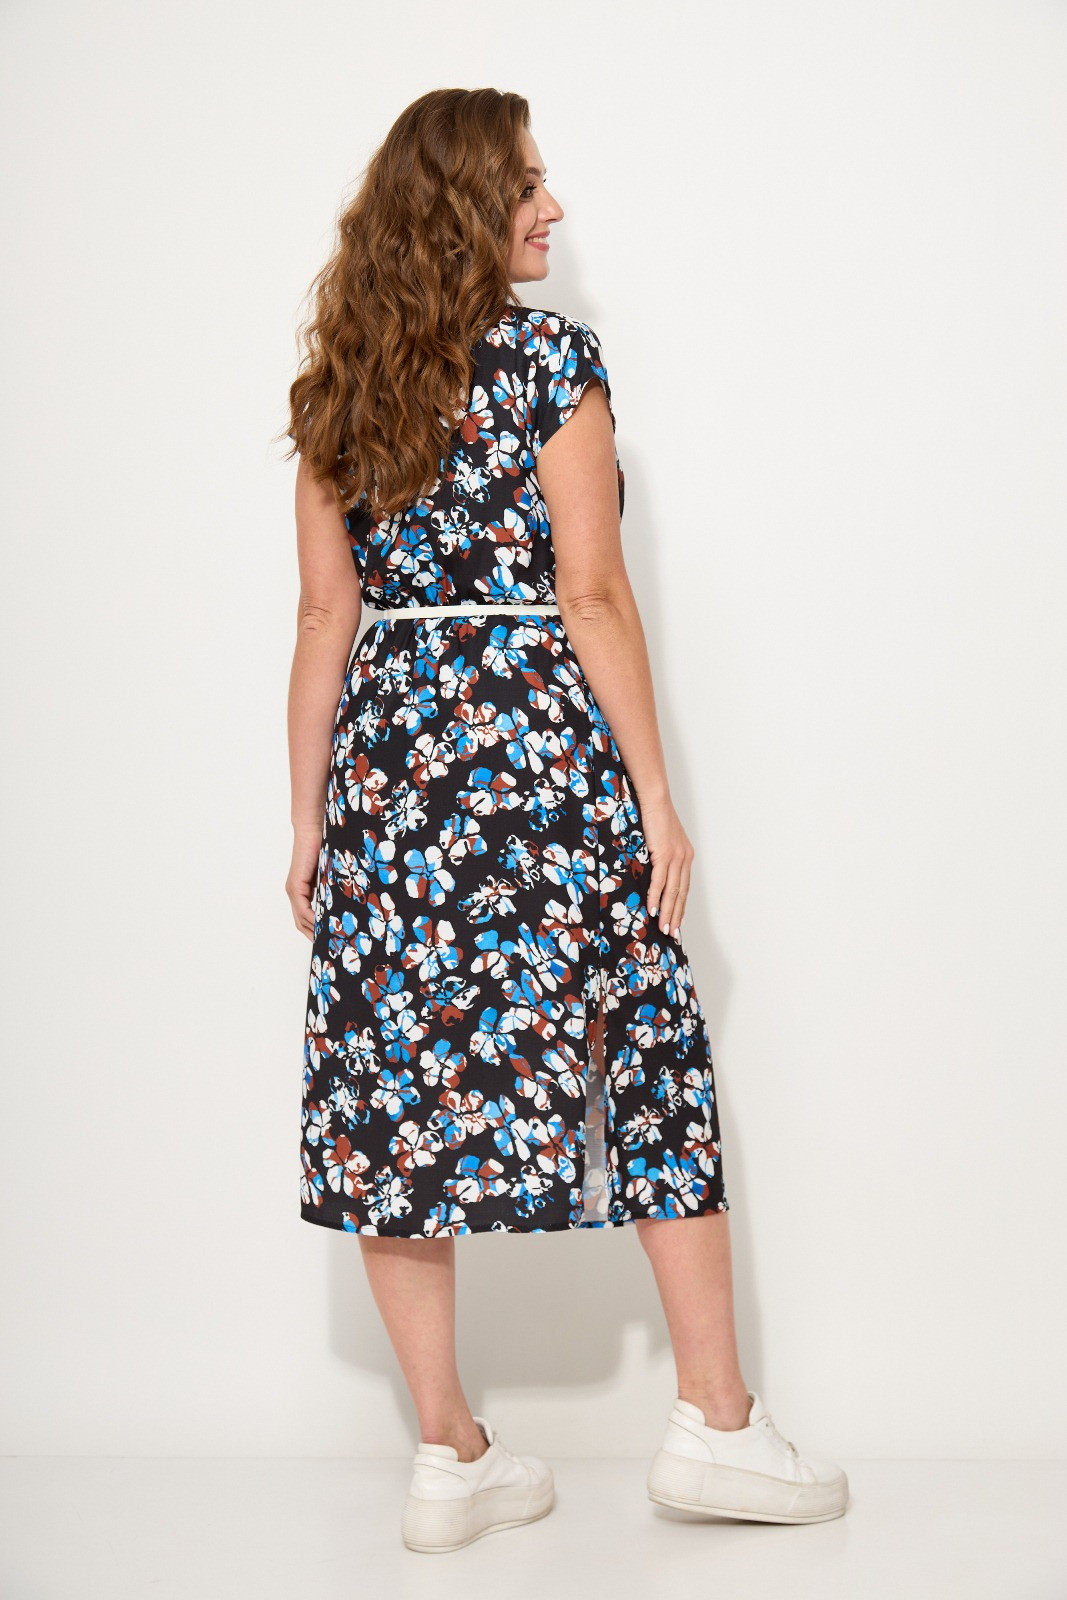 Платье Кокетка и К 943-4 черный+синие цветы